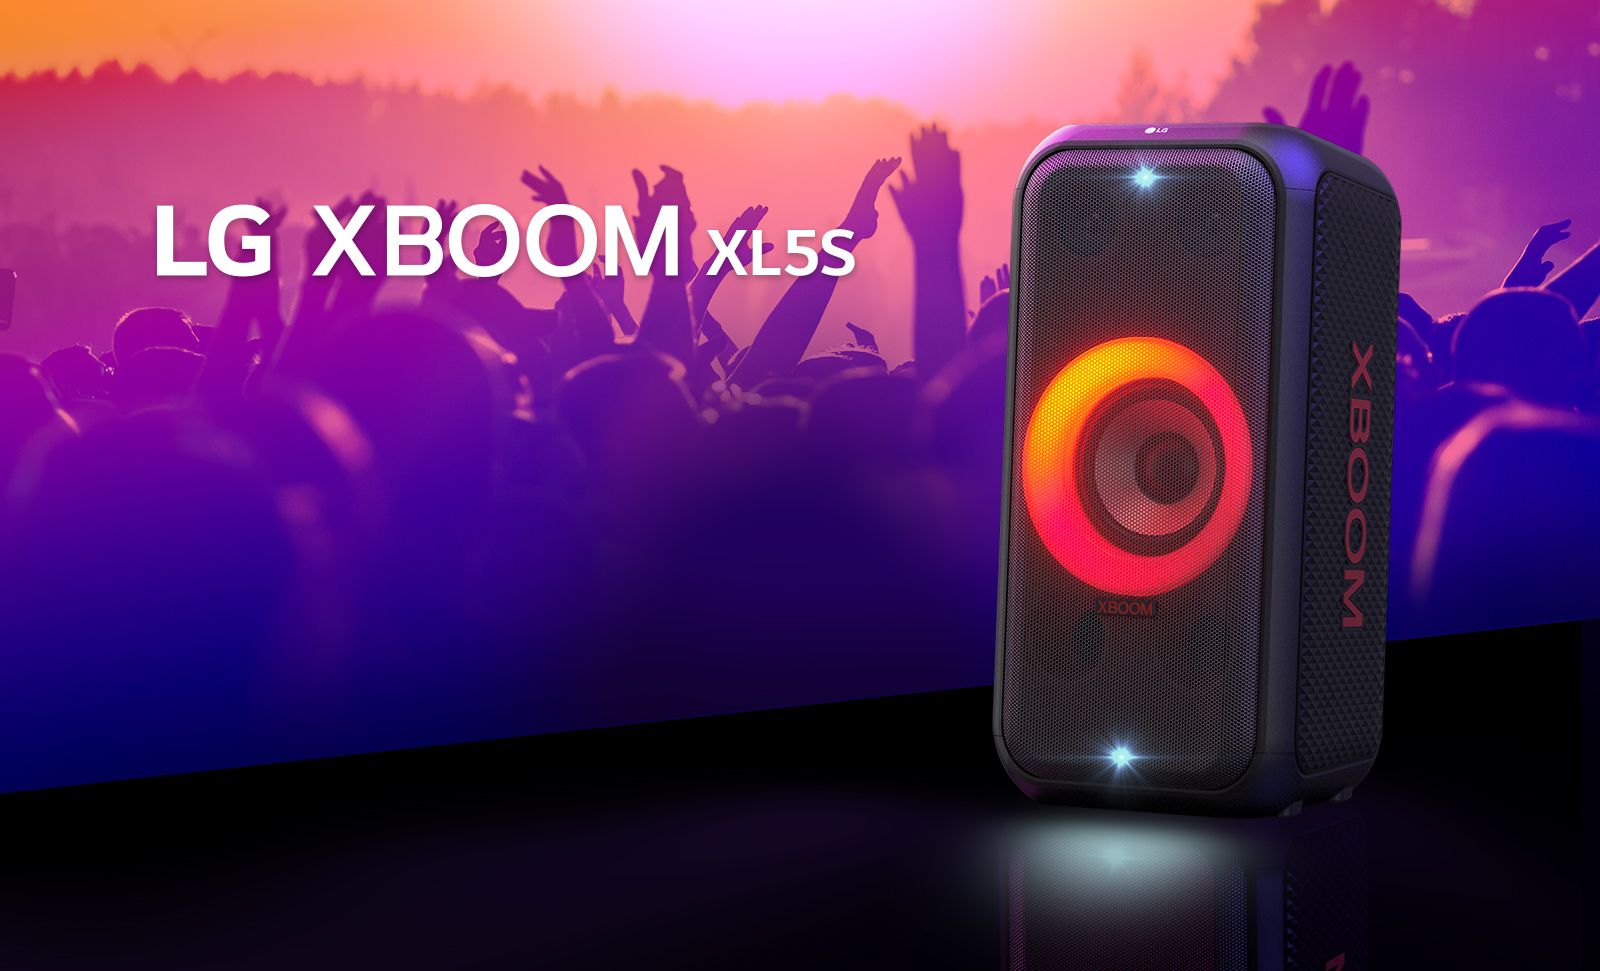 LG XBOOM XL5S trên sân khấu chiếu ánh sáng hòa trộn đỏ và cam. Sau sân khấu, mọi người đang tận hưởng âm nhạc.